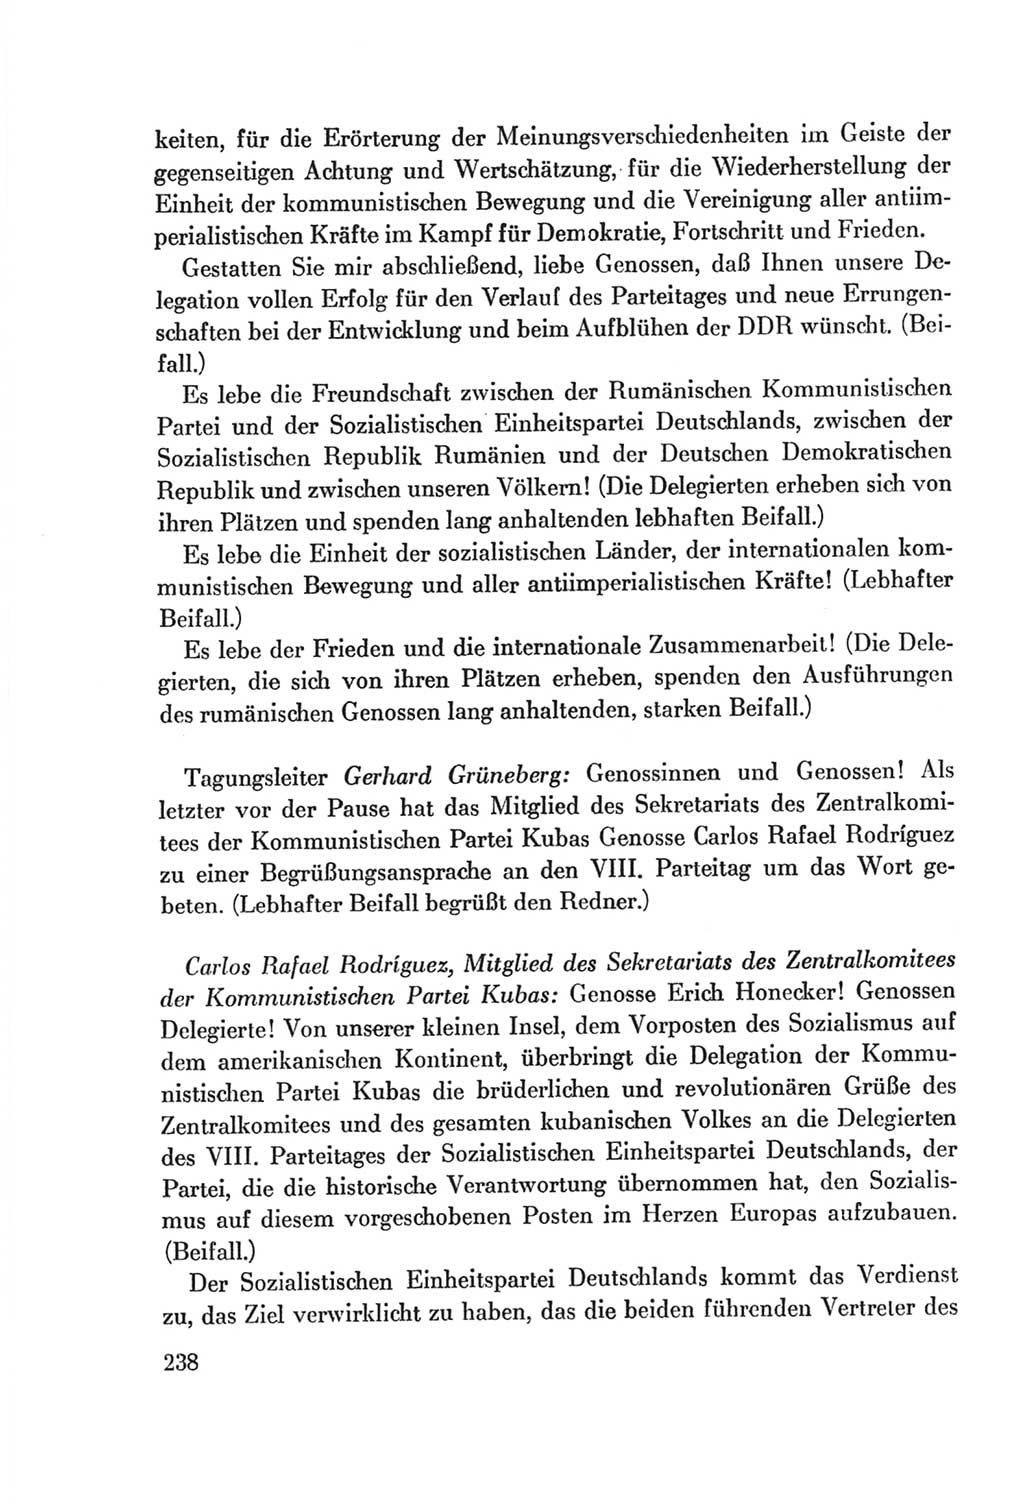 Protokoll der Verhandlungen des Ⅷ. Parteitages der Sozialistischen Einheitspartei Deutschlands (SED) [Deutsche Demokratische Republik (DDR)] 1971, Band 1, Seite 238 (Prot. Verh. Ⅷ. PT SED DDR 1971, Bd. 1, S. 238)